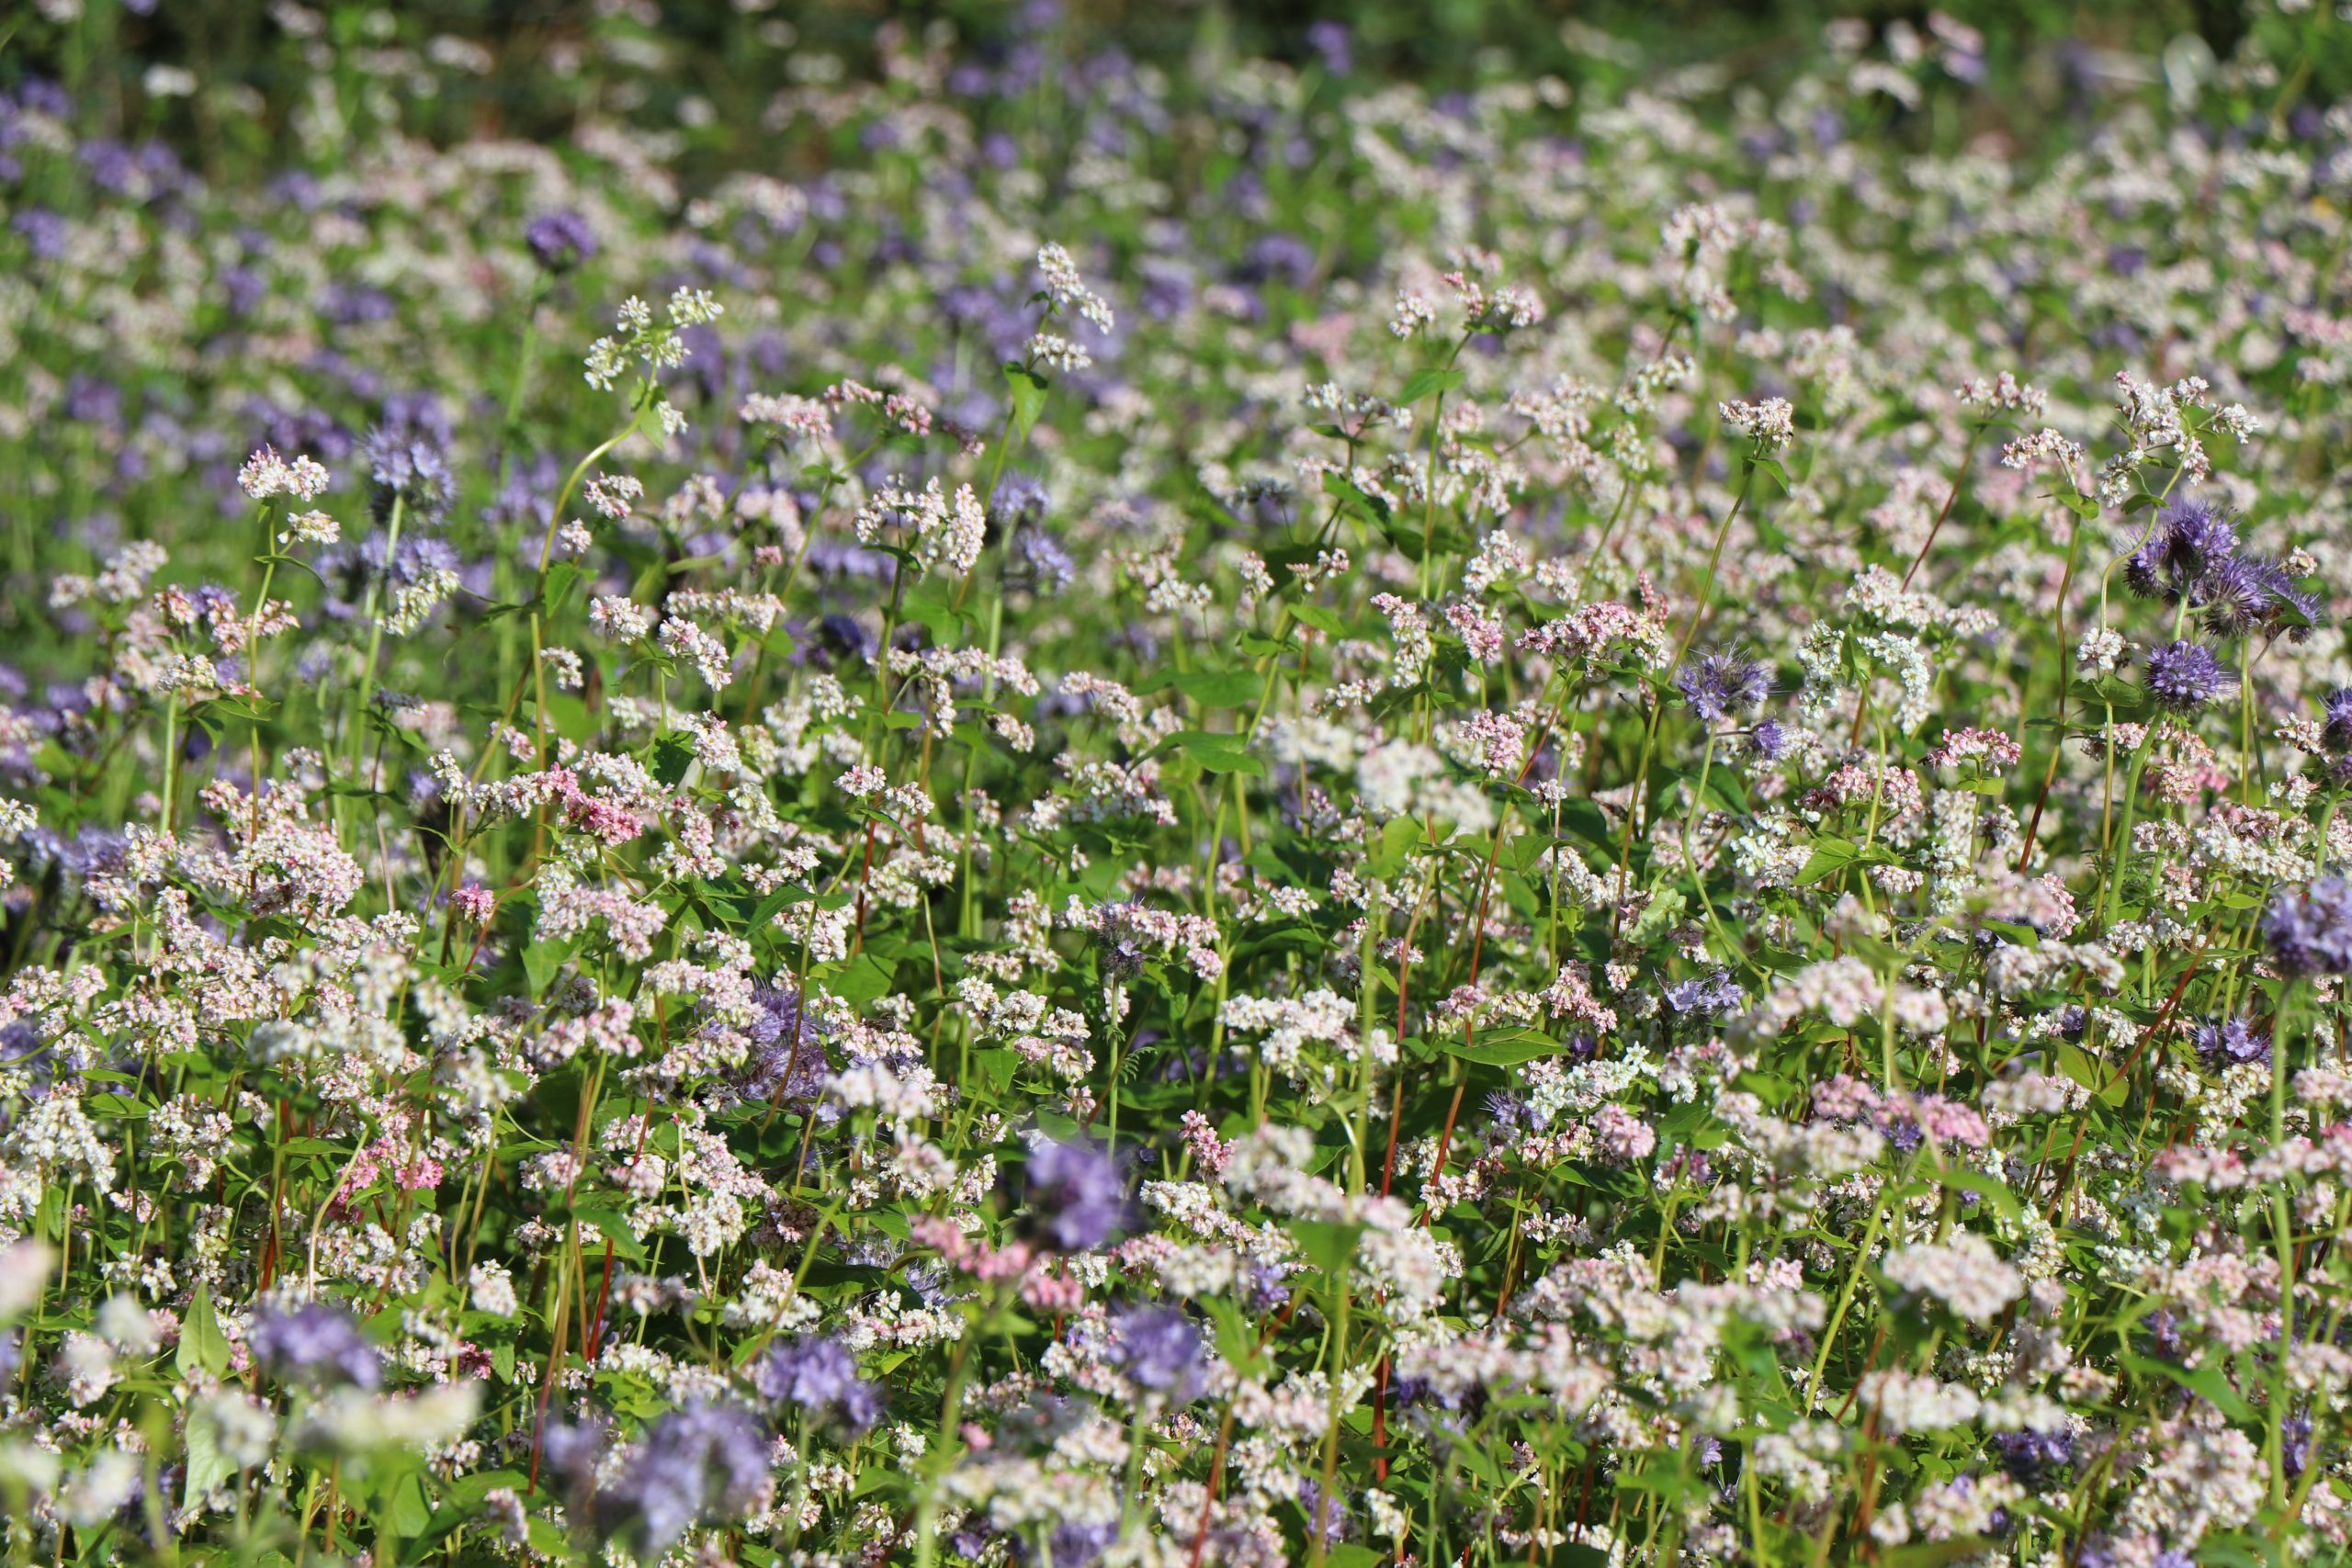 buckwheat cover crop in flower in field